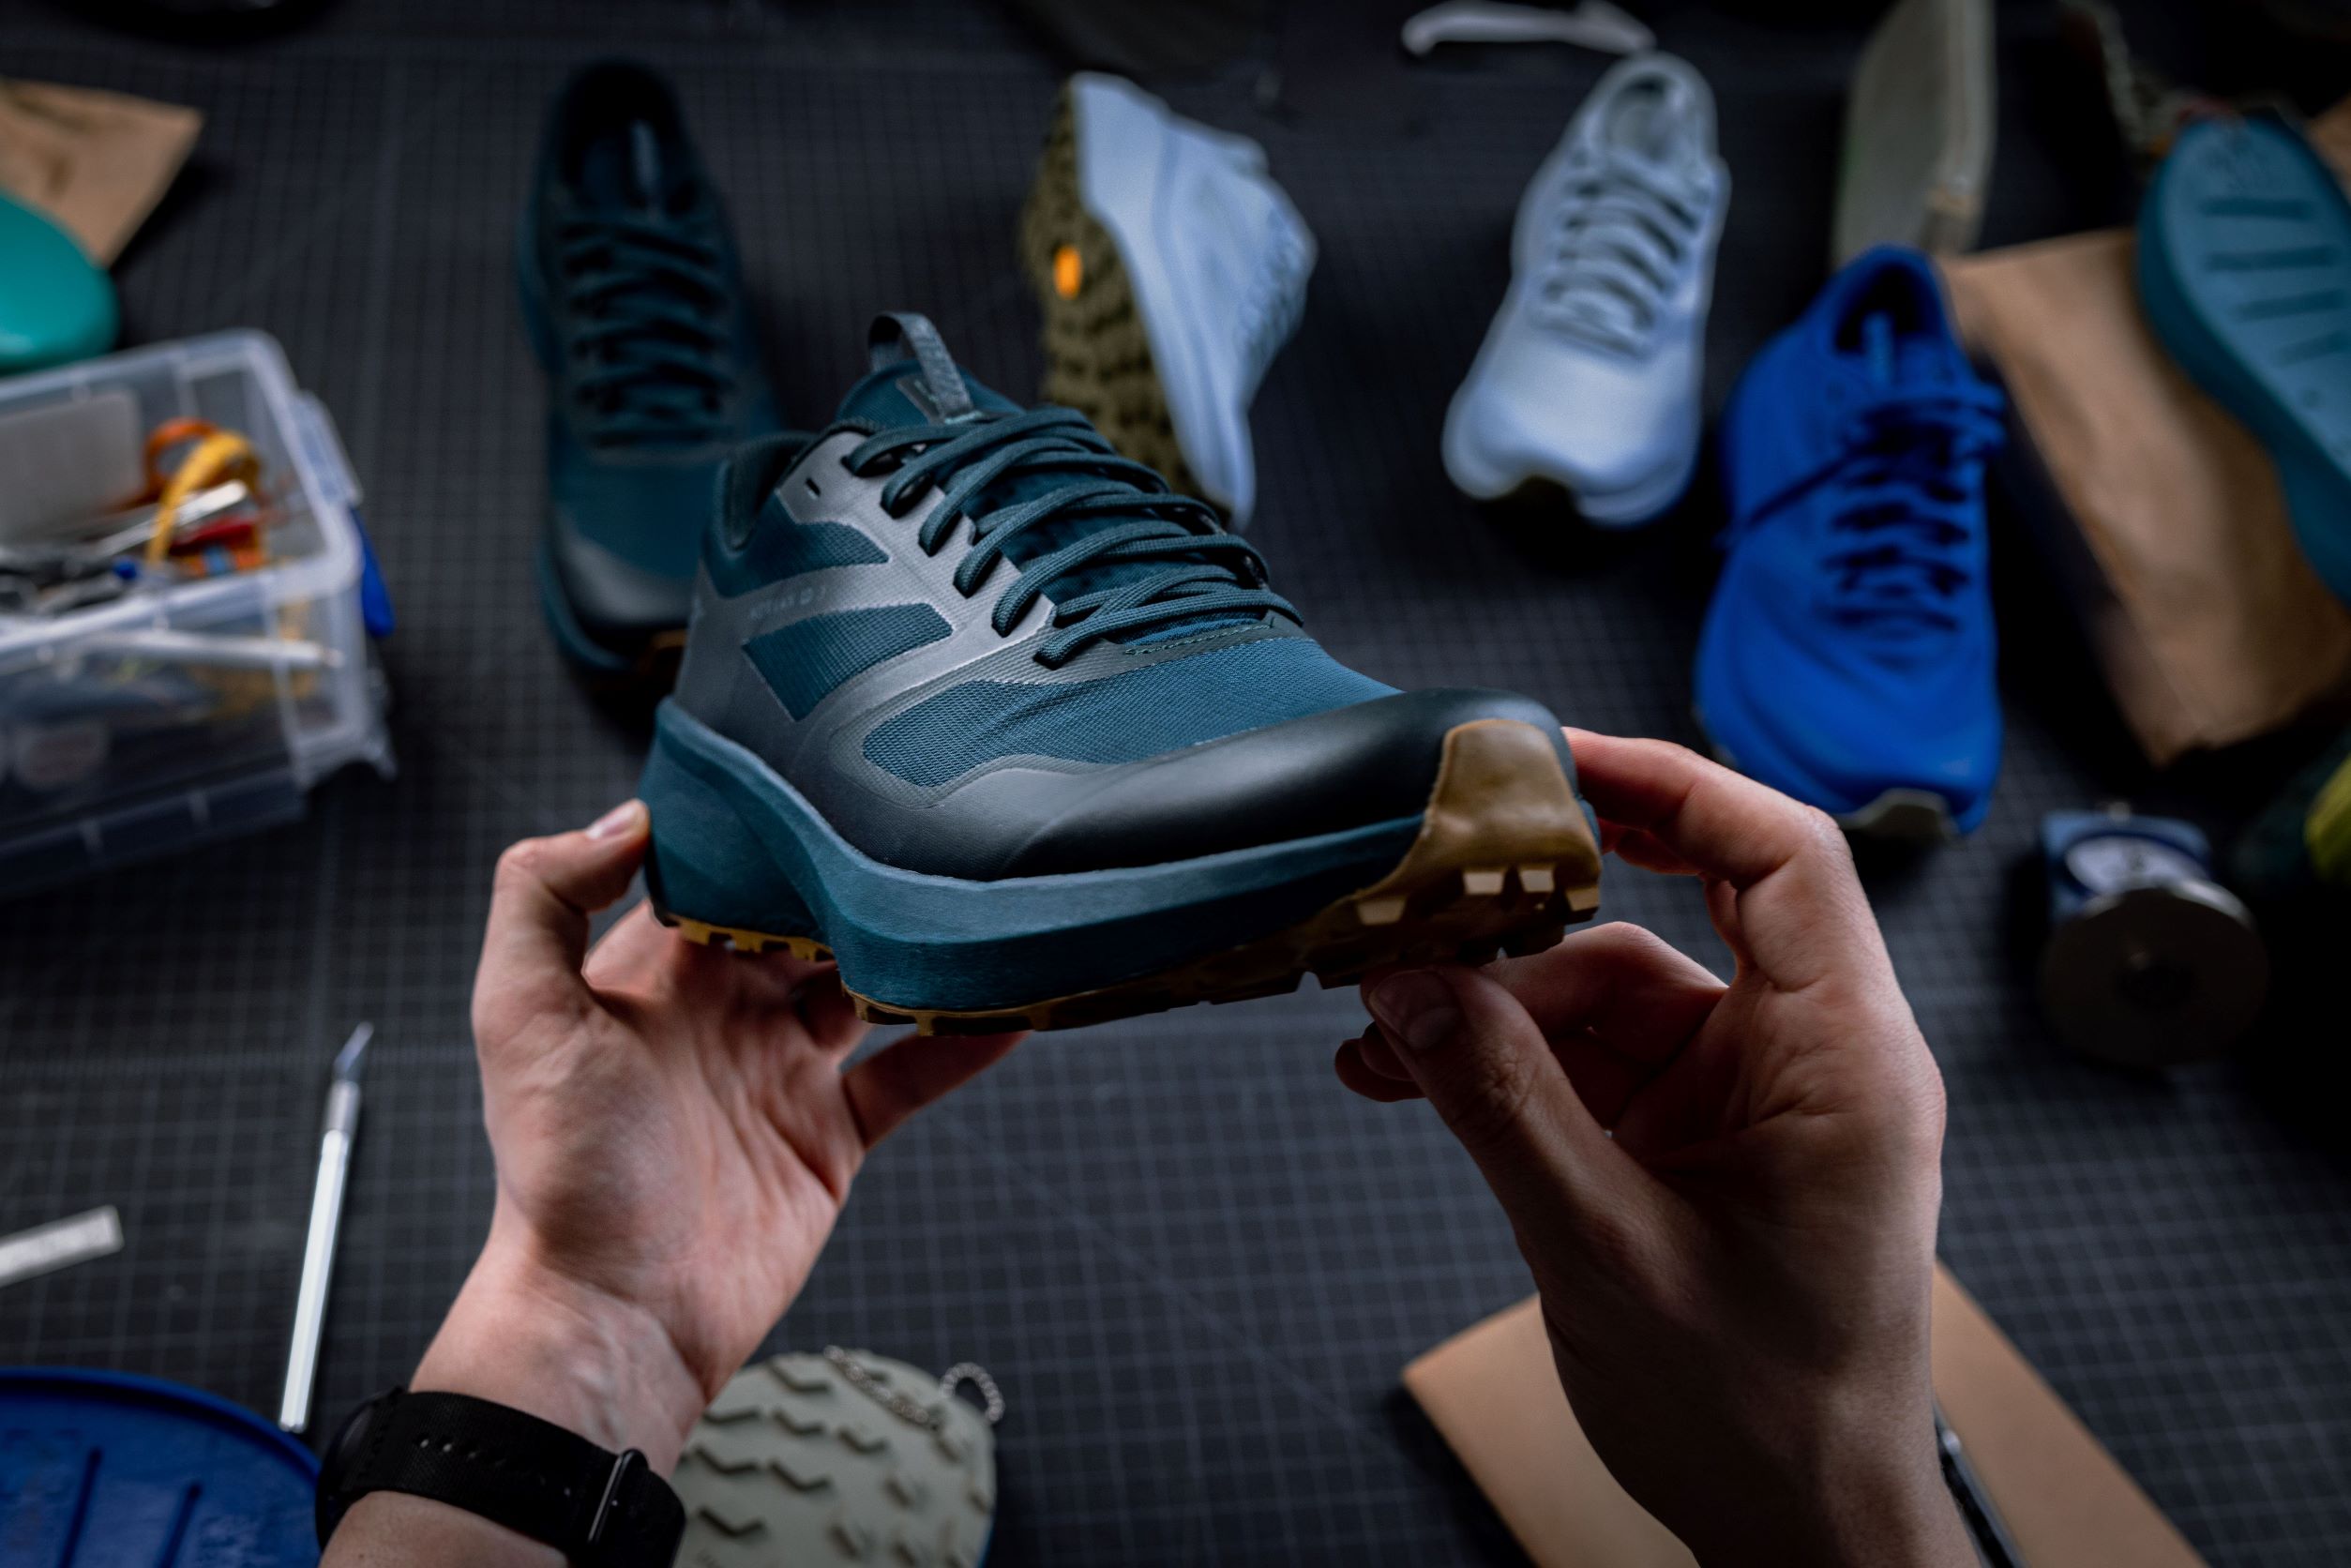 Le créateur de chaussures Arc’teryx, Joël Salamin, raconte comment la nouvelle chaussure Norvan LD 3 a vu le jour